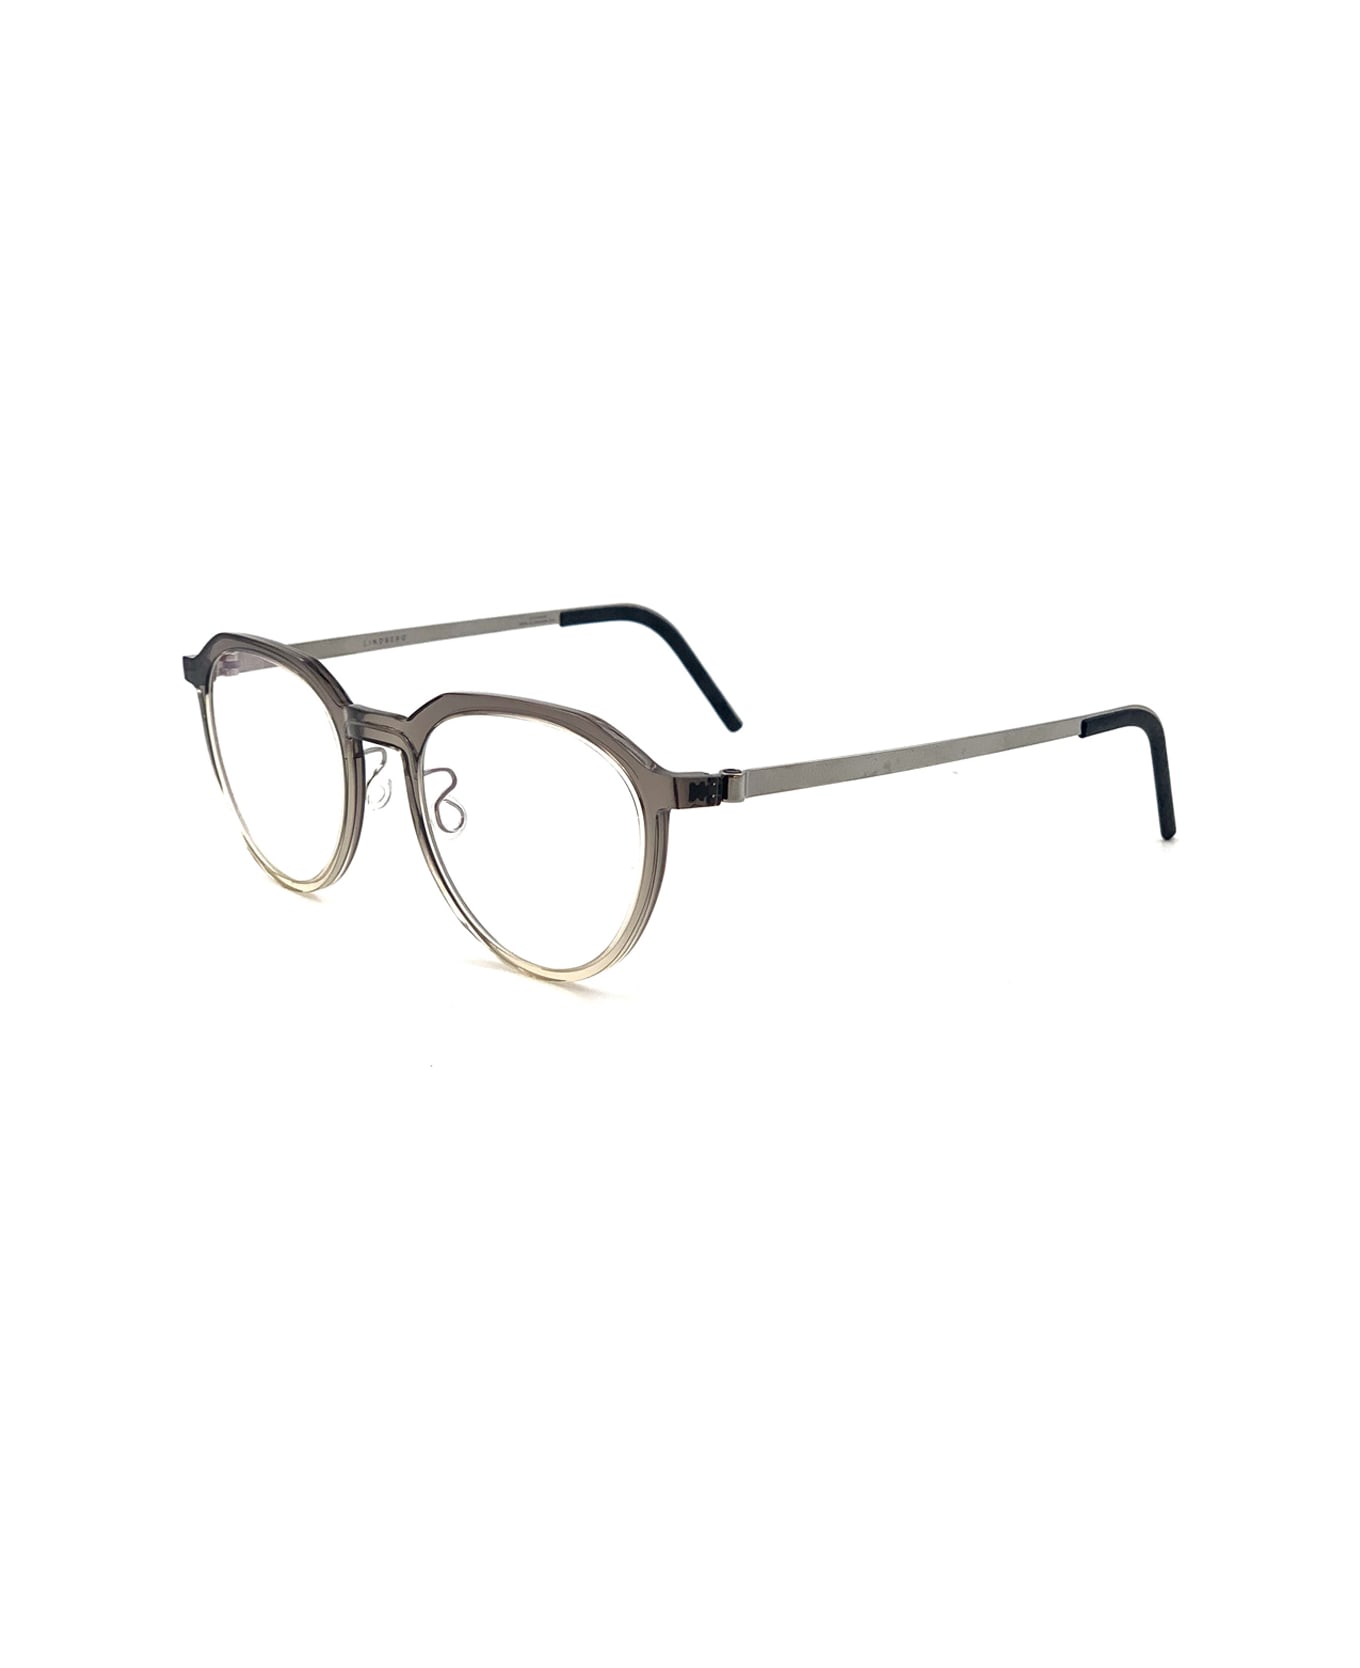 LINDBERG Acetanium 1046 Ai32/k265 P10 Glasses - Grigio アイウェア